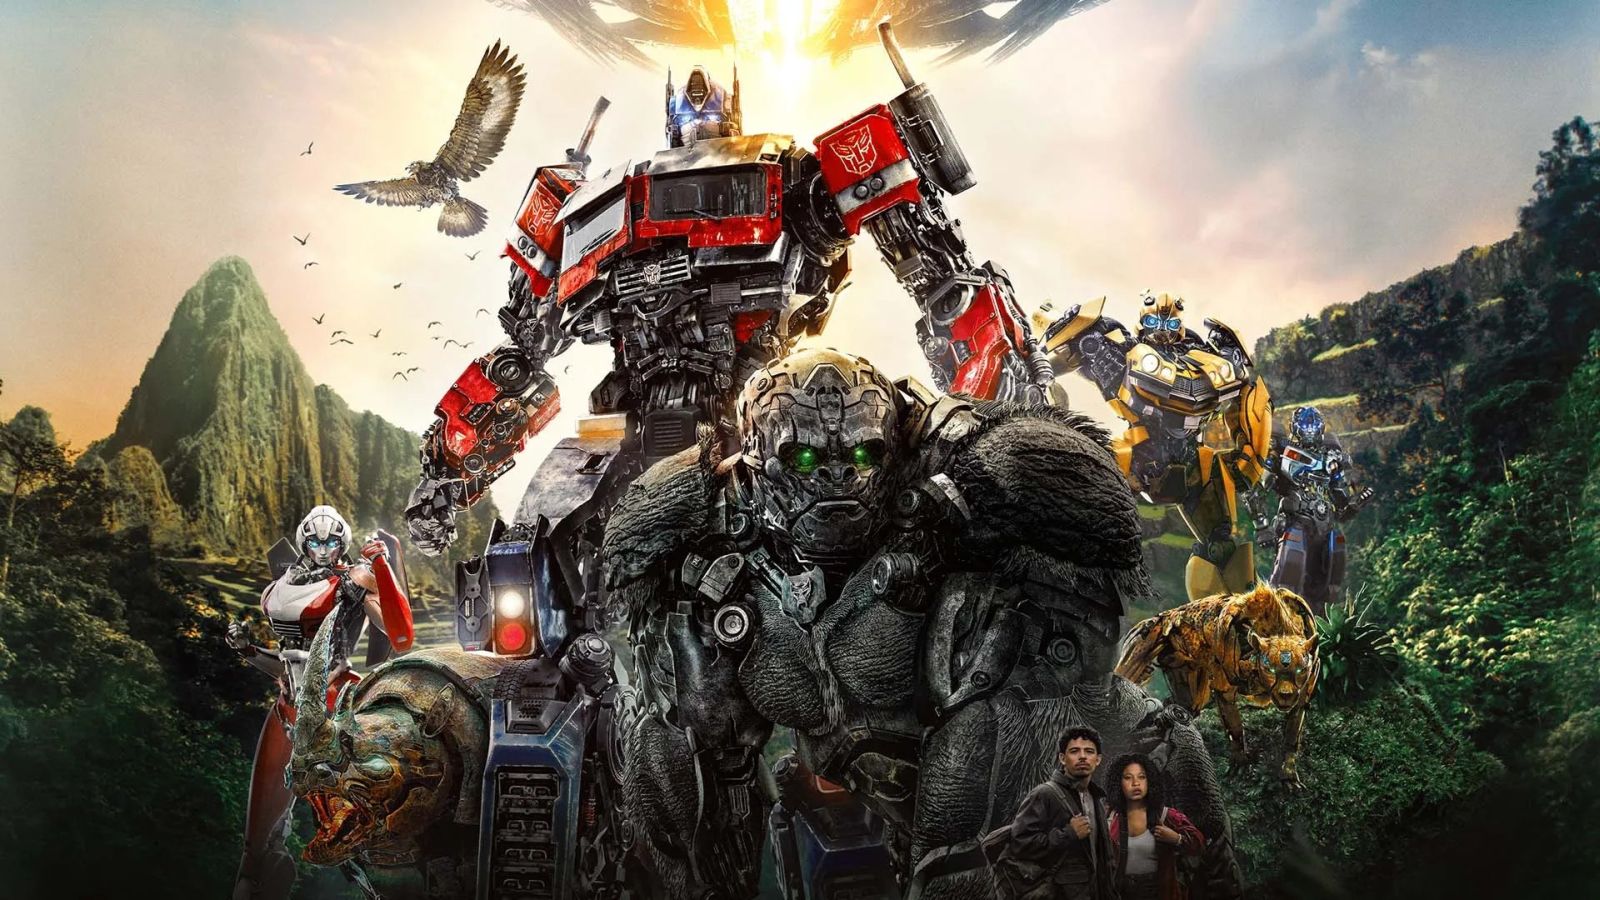 Immagine tratta dal poster di Transformers: Il Risveglio